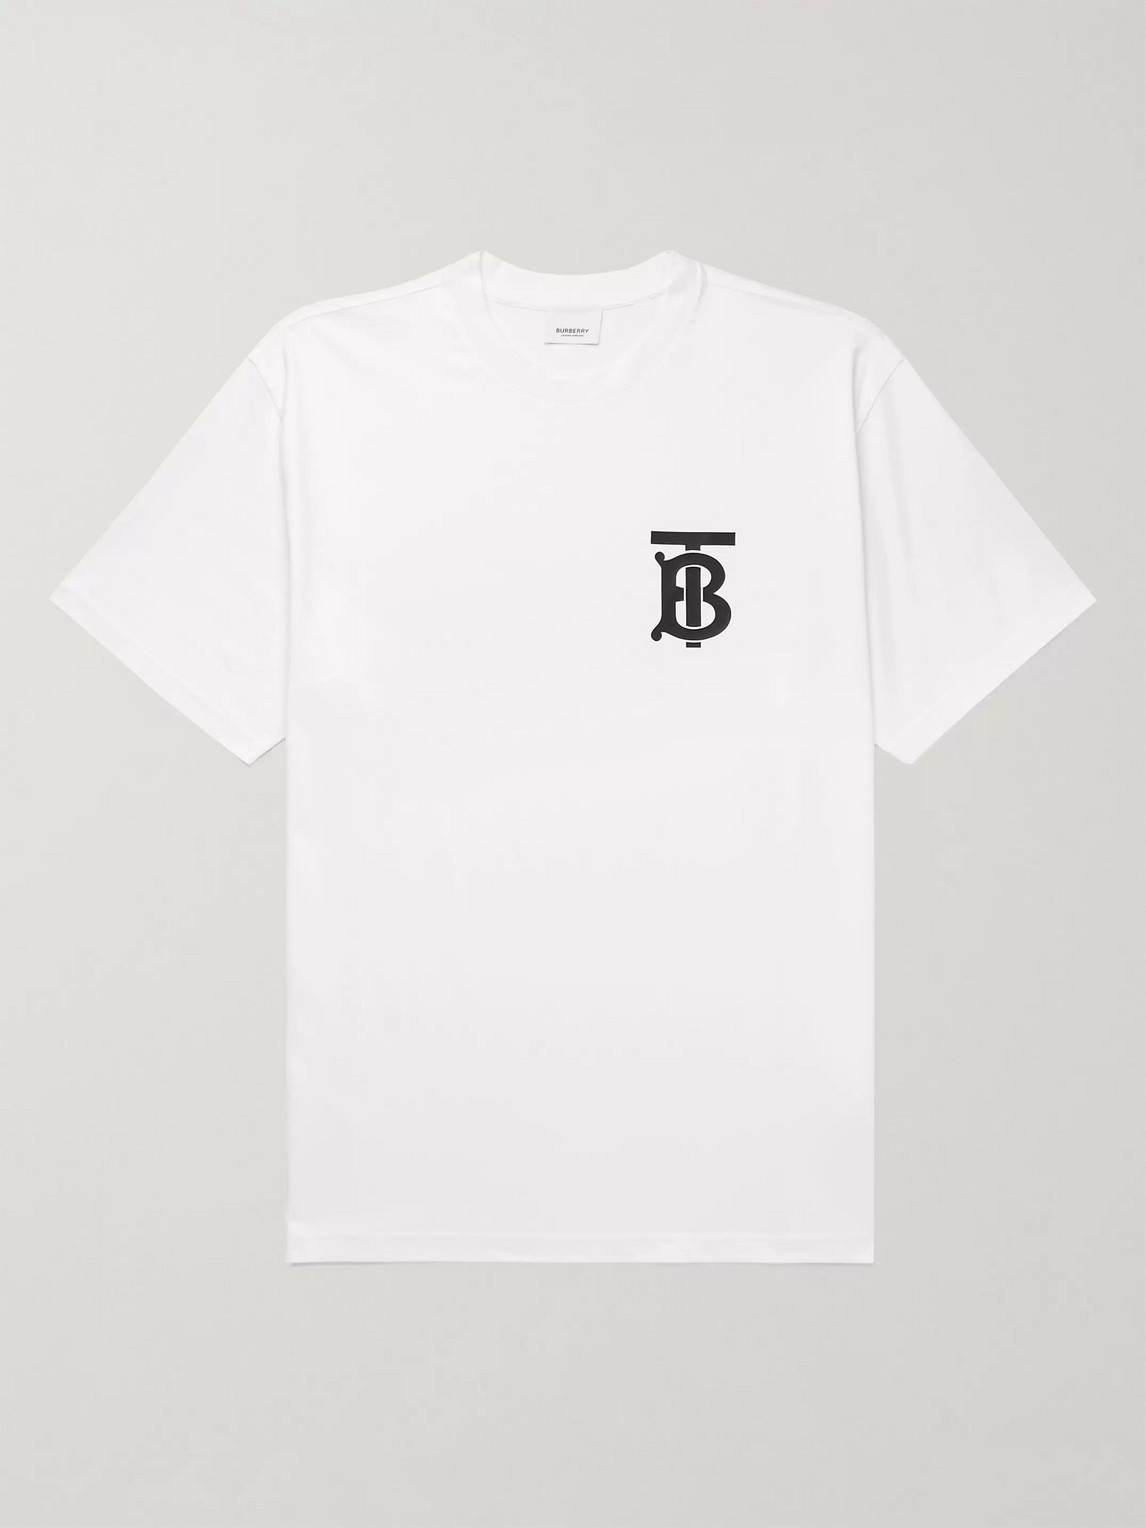 burberry white tee shirt